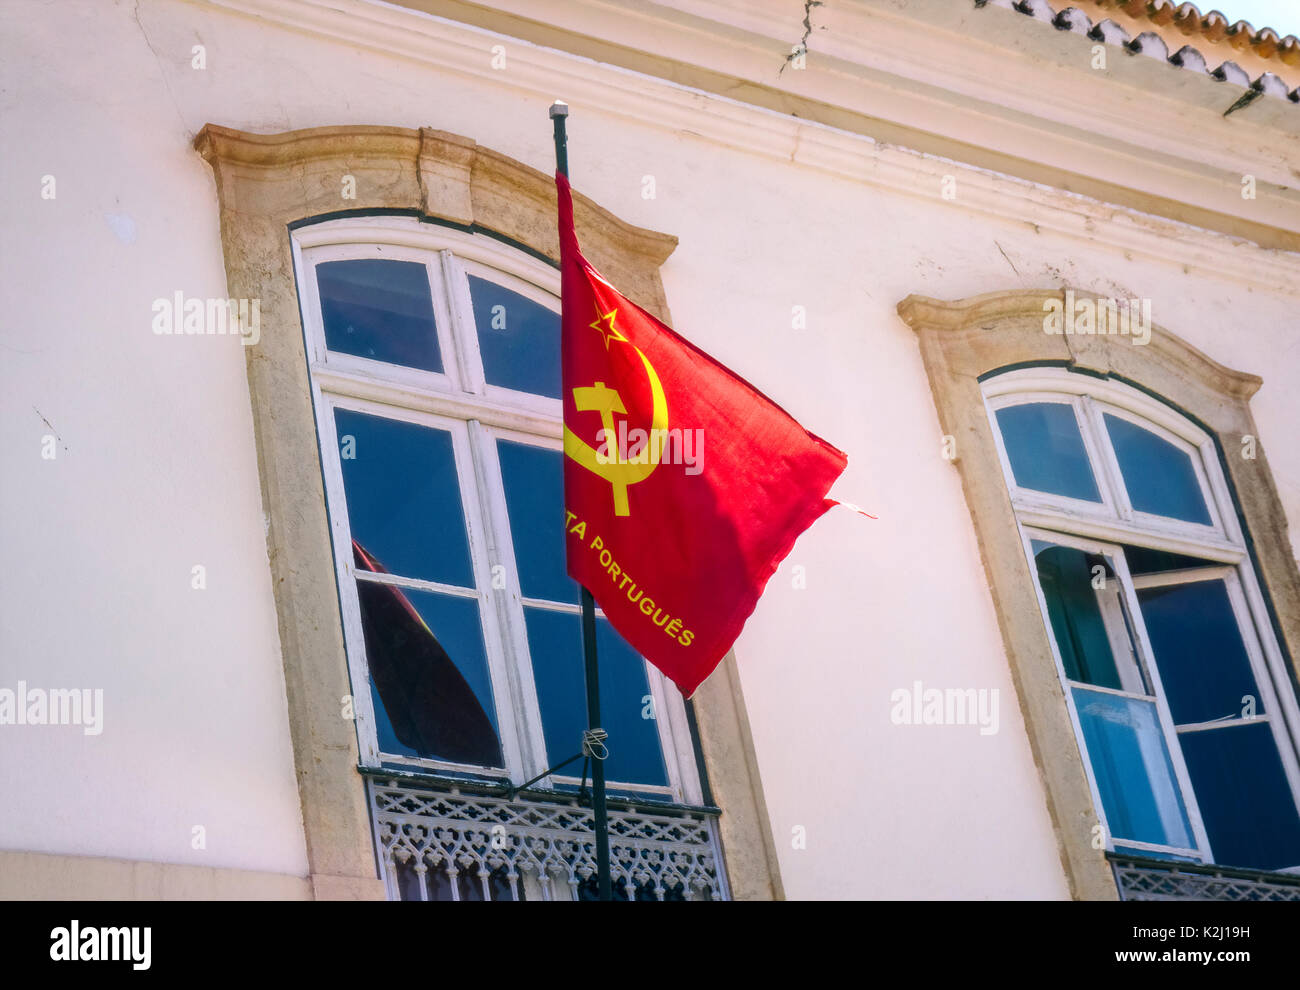 Flagge der portugiesischen Kommunistischen Partei (Partido Comunista Português) auf einem Gebäude in Faro, Portugal. Stockfoto